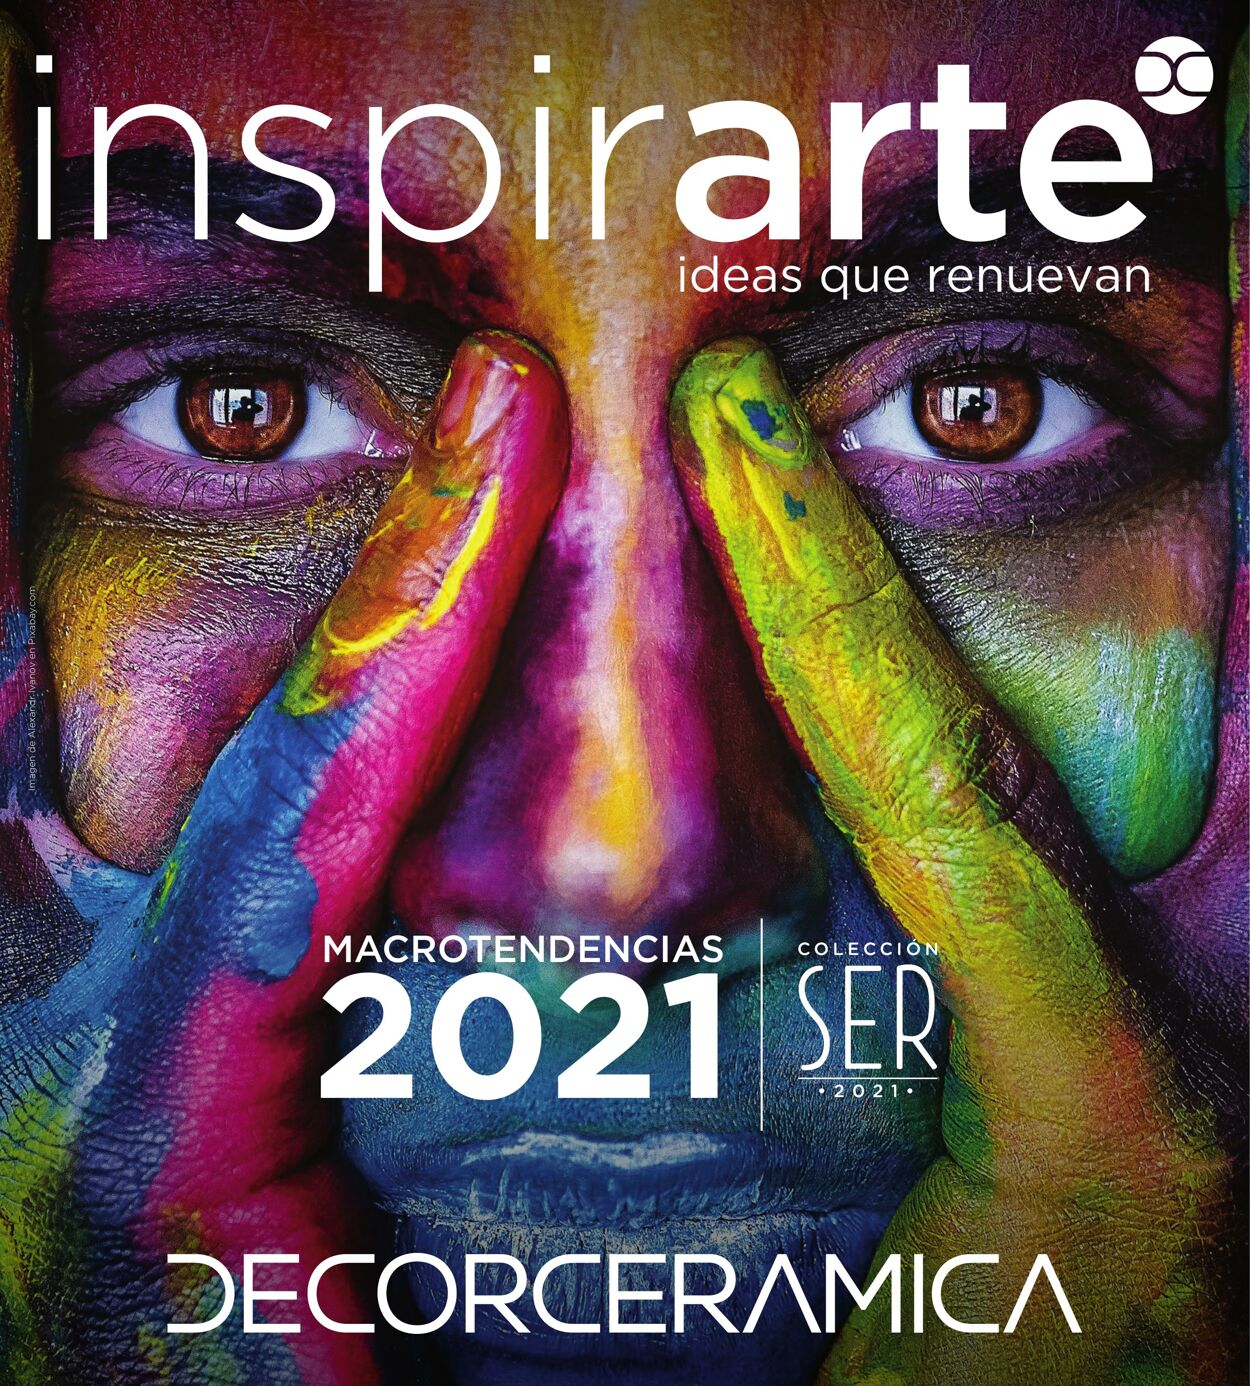 Catálogo Decorcerámica 01.01.2021 - 31.12.2021